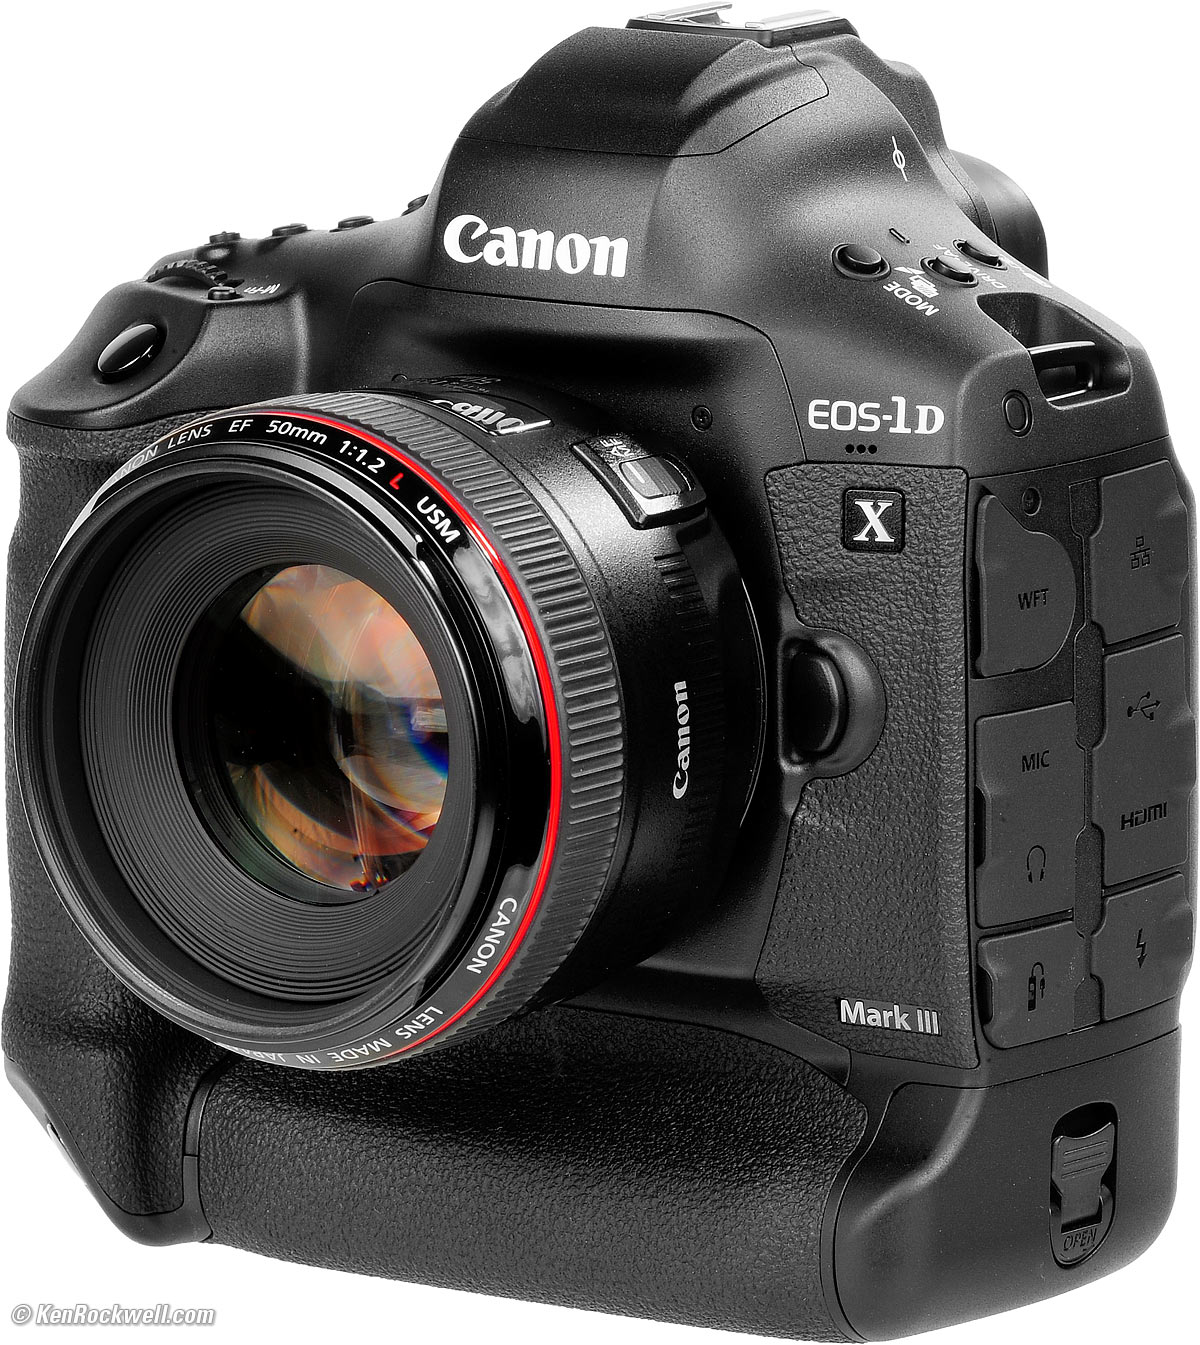 Evalueerbaar pijn Ijveraar Canon 1DX Mark III Review